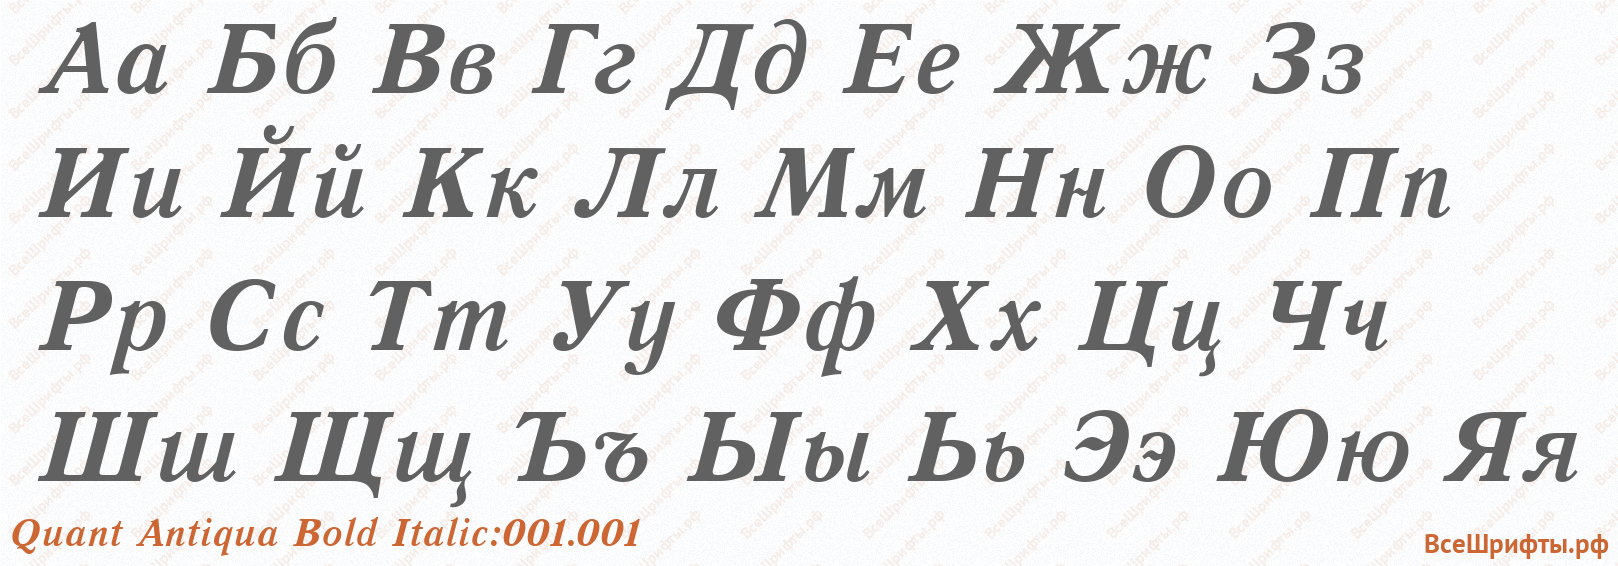 Шрифт Quant Antiqua Bold Italic:001.001 с русскими буквами